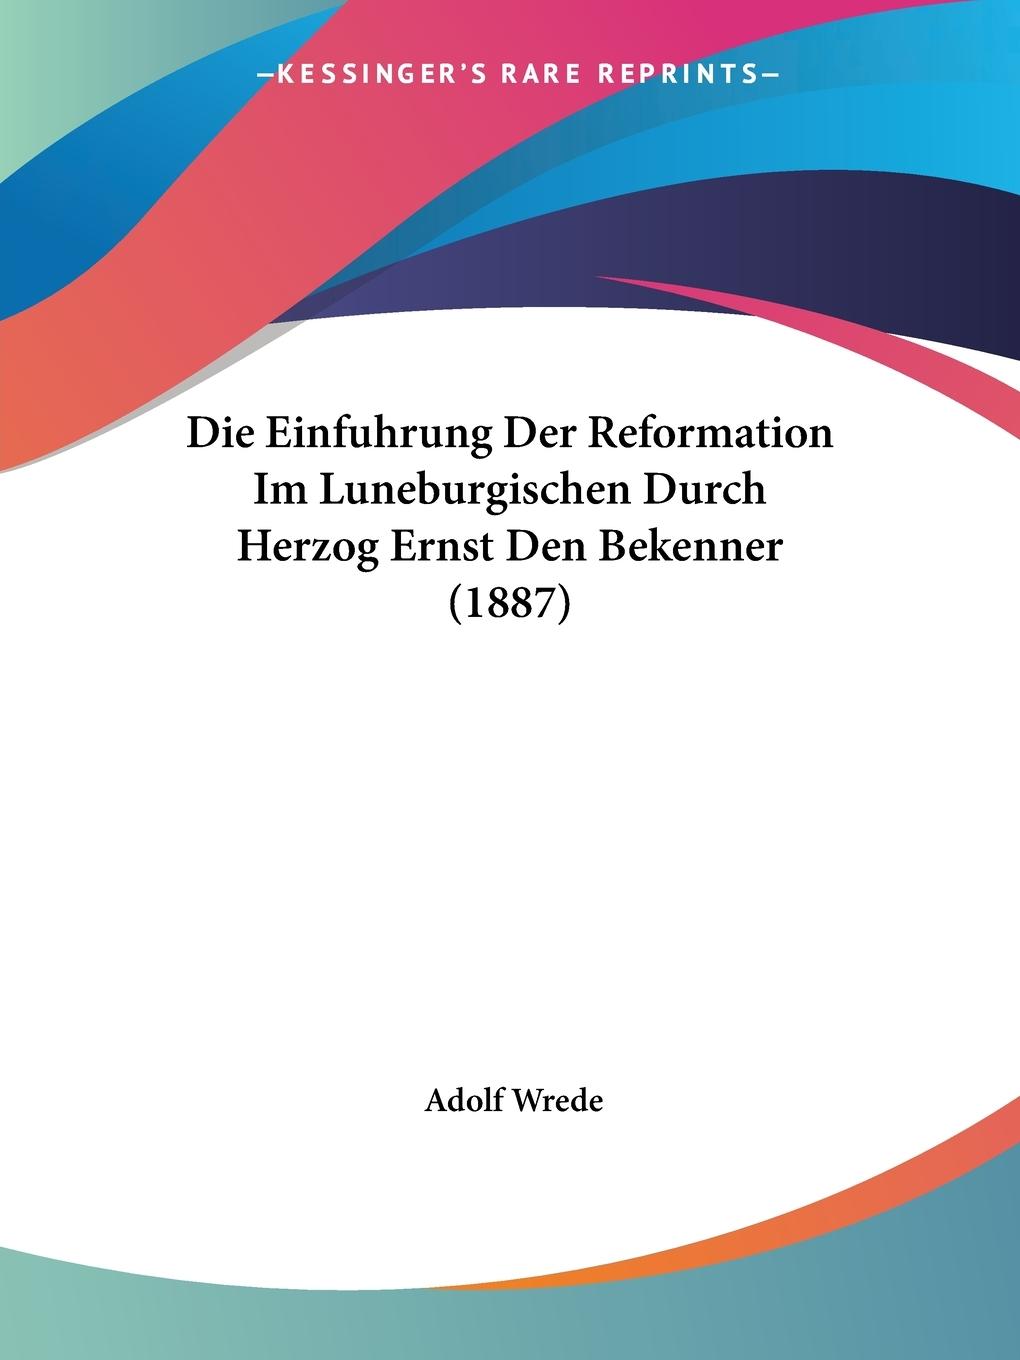 Die Einfuhrung Der Reformation Im Luneburgischen Durch Herzog Ernst Den Bekenner (1887) - Wrede, Adolf